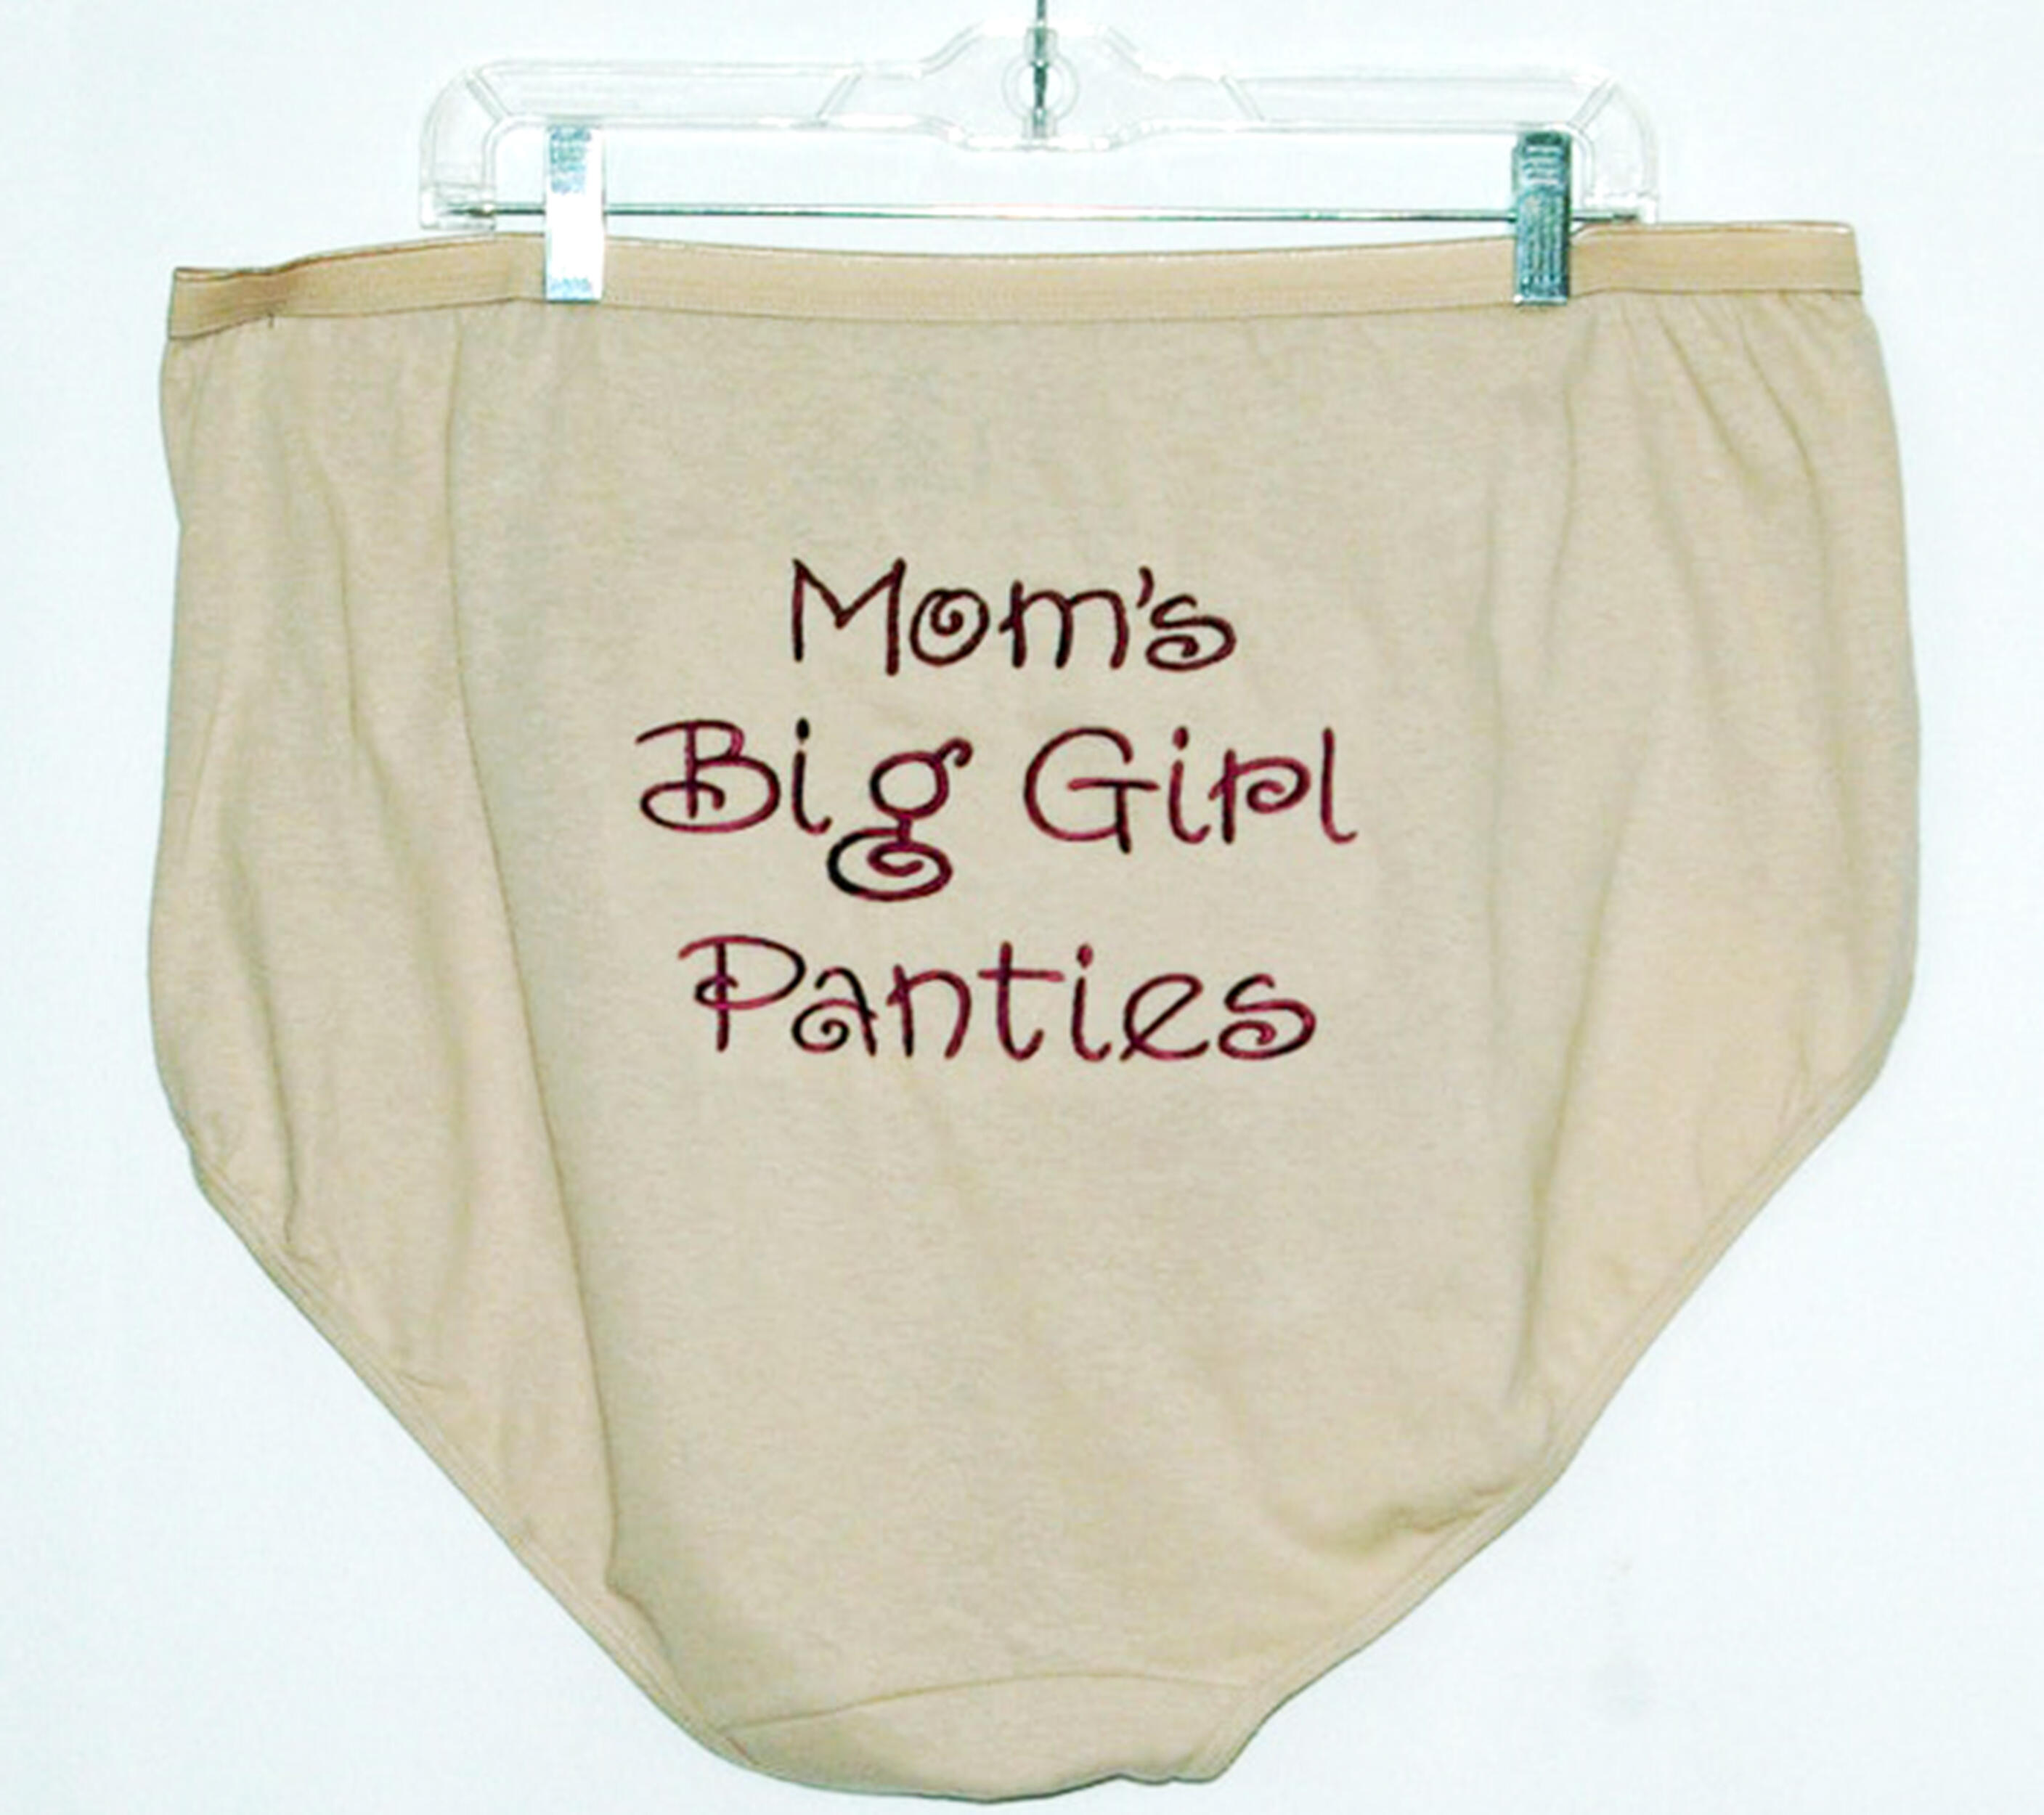 Mom In Panties Images